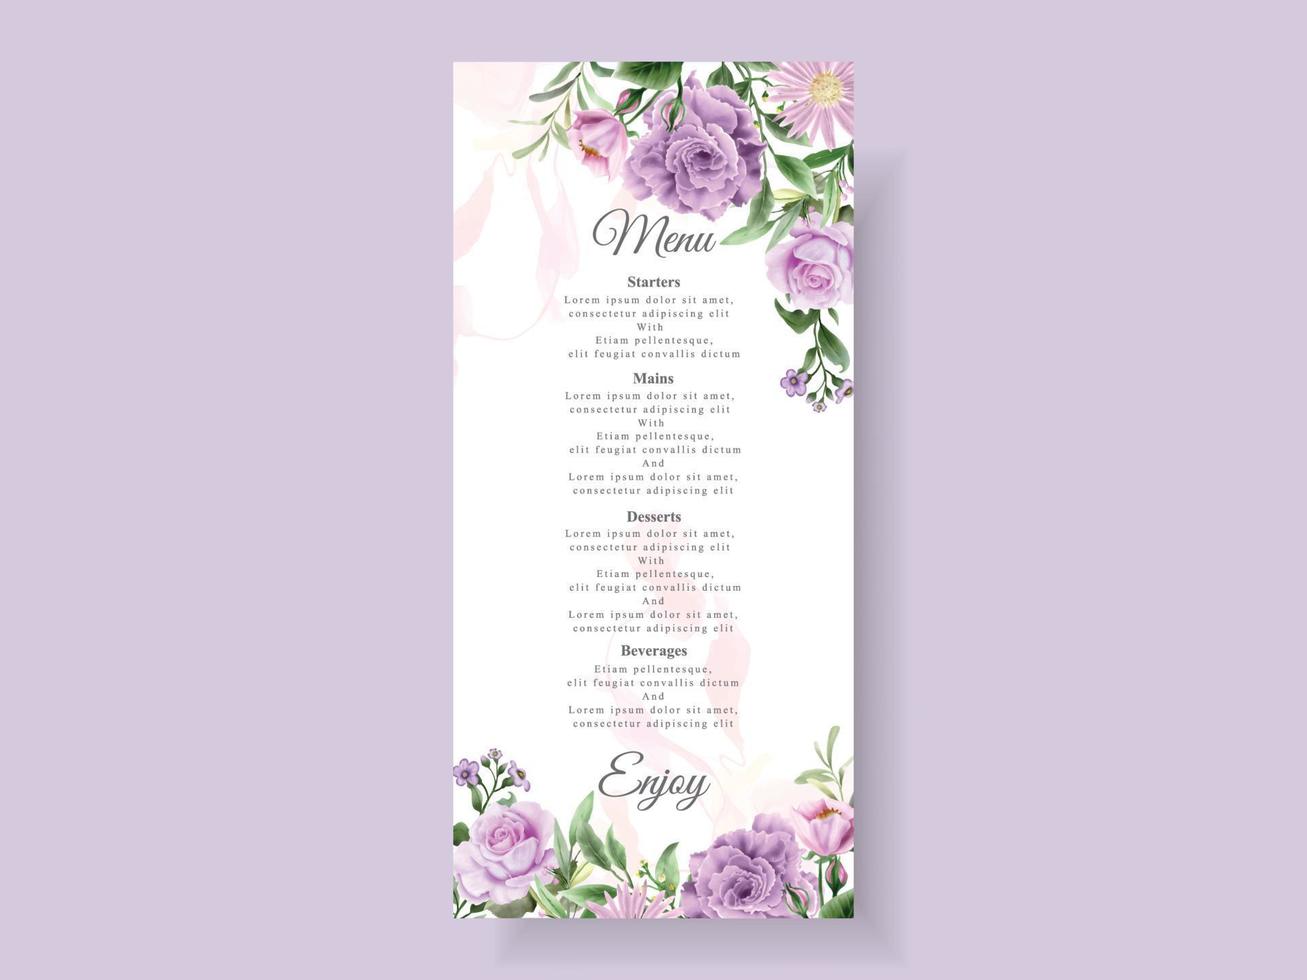 modelo de cartão de convite de casamento de lindas flores roxas vetor